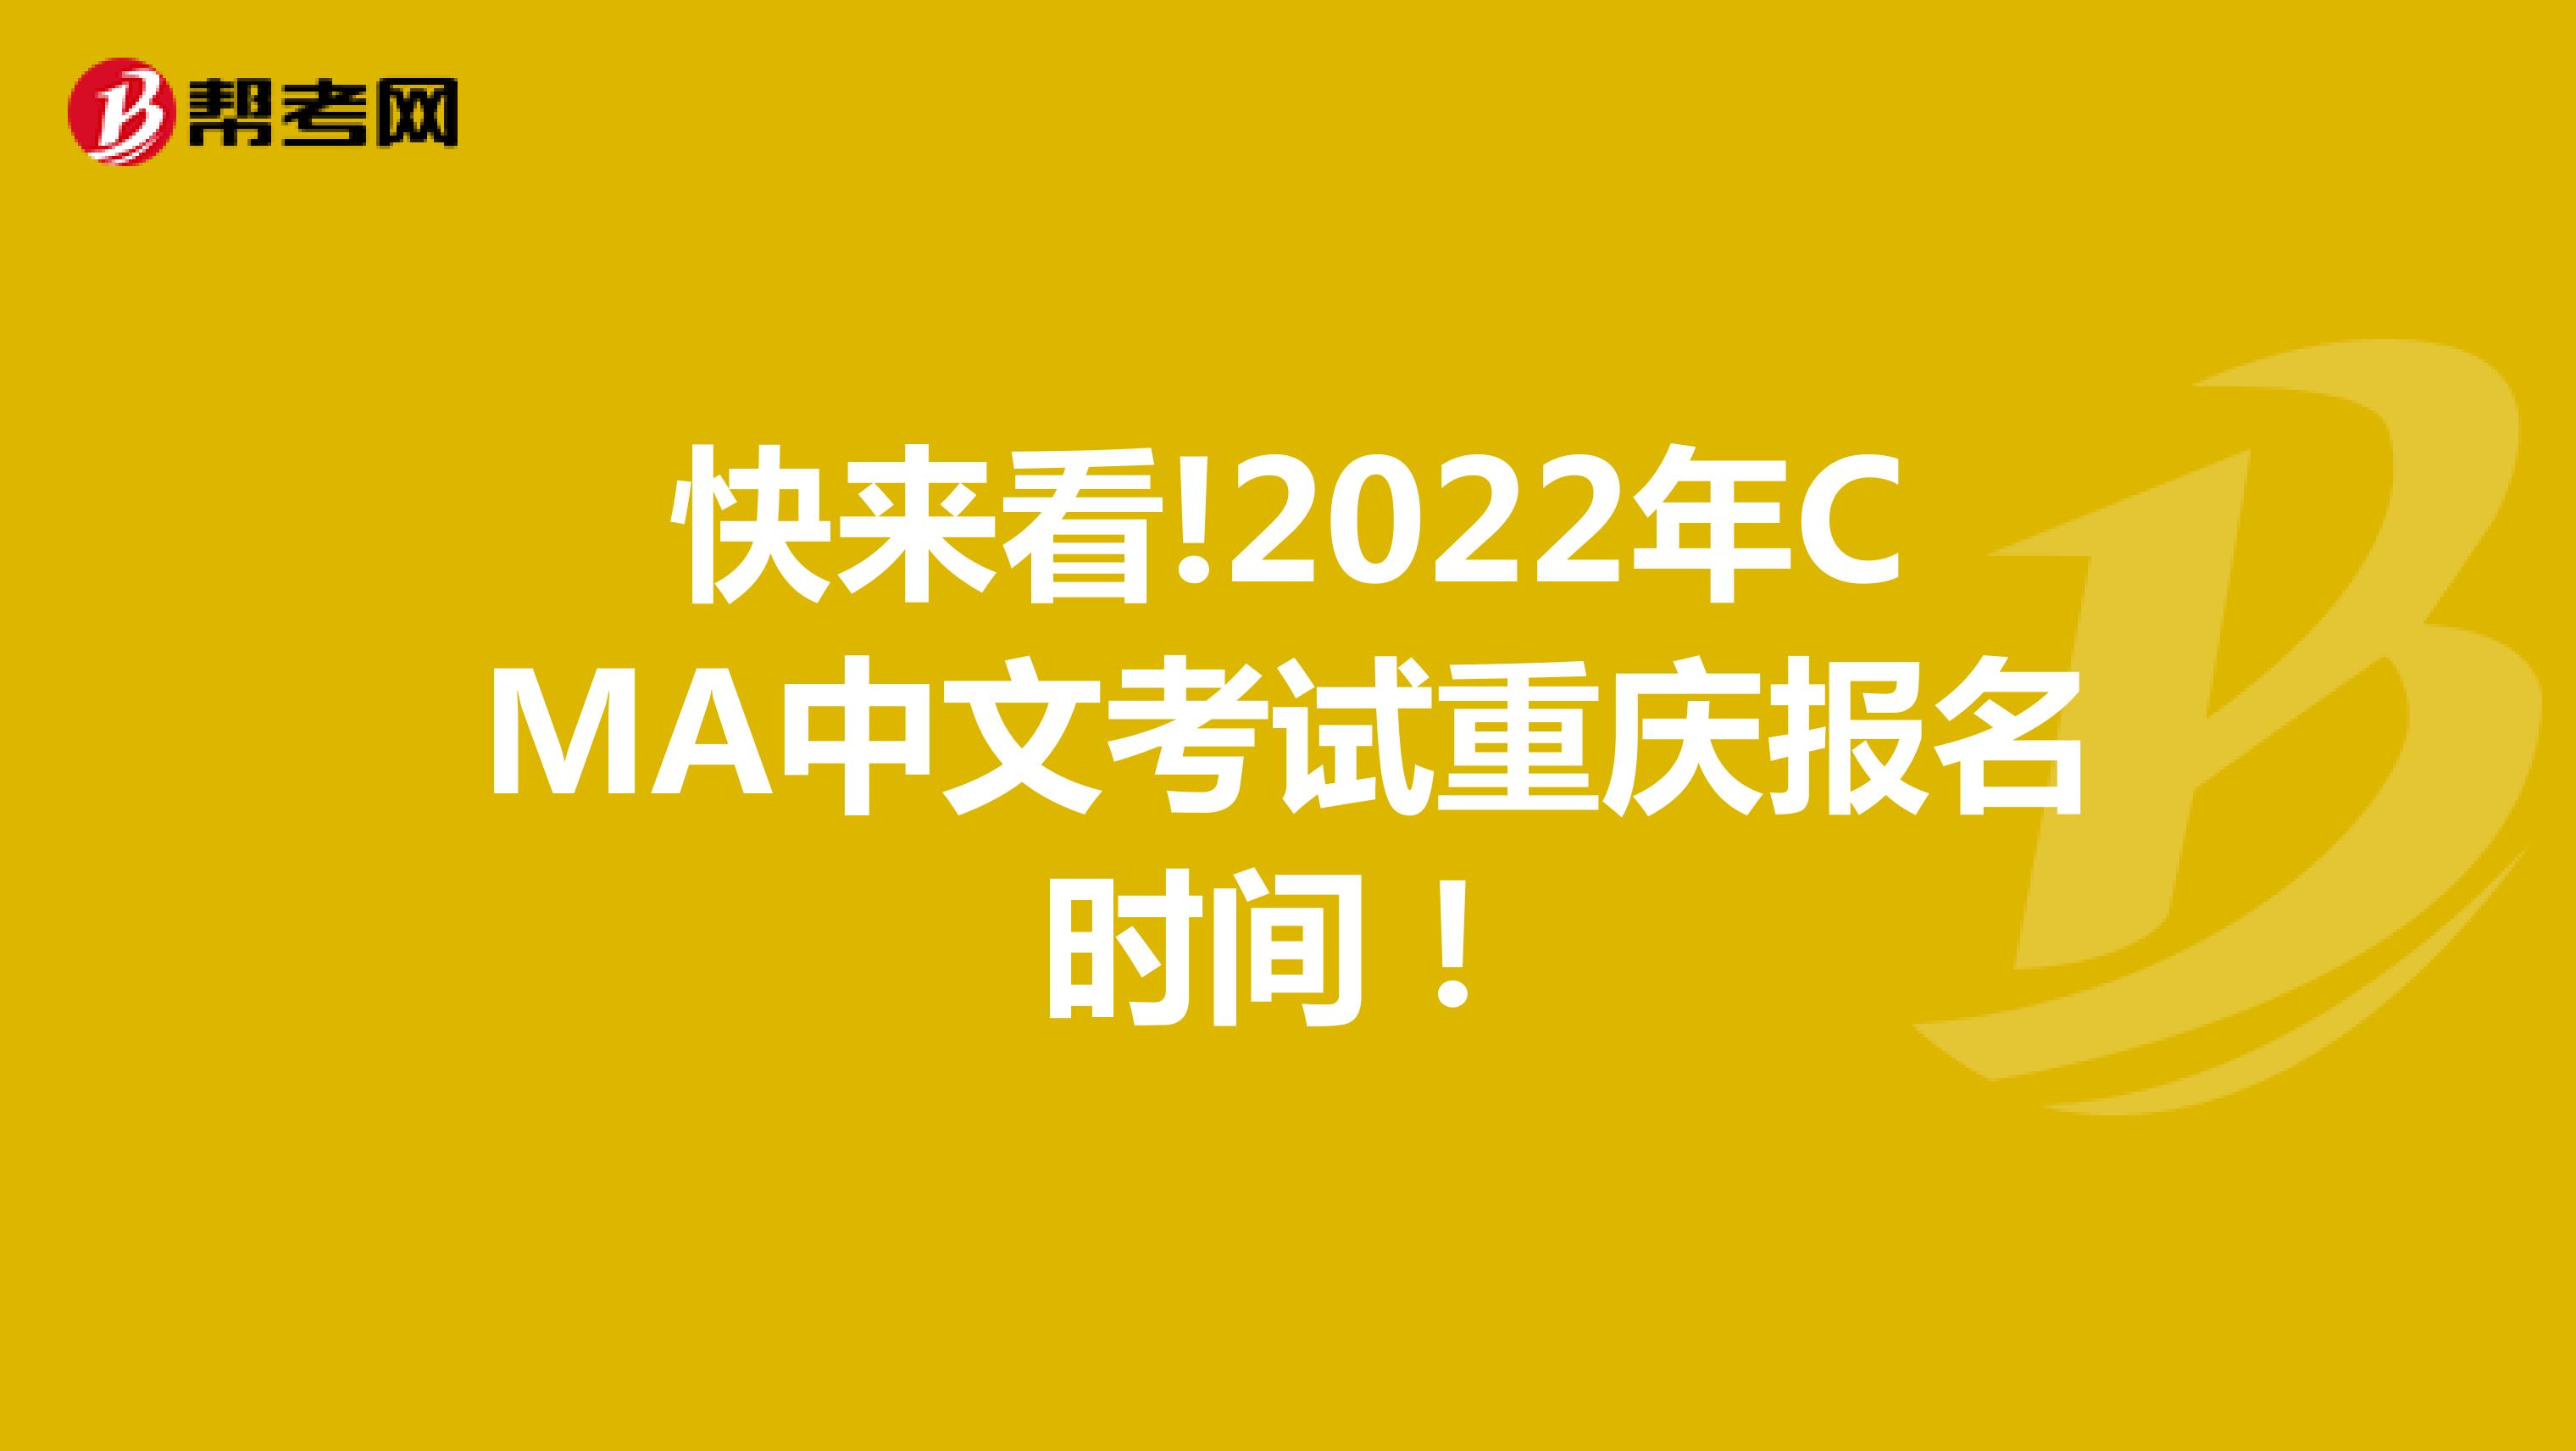 快来看!2022年CMA中文考试重庆报名时间！